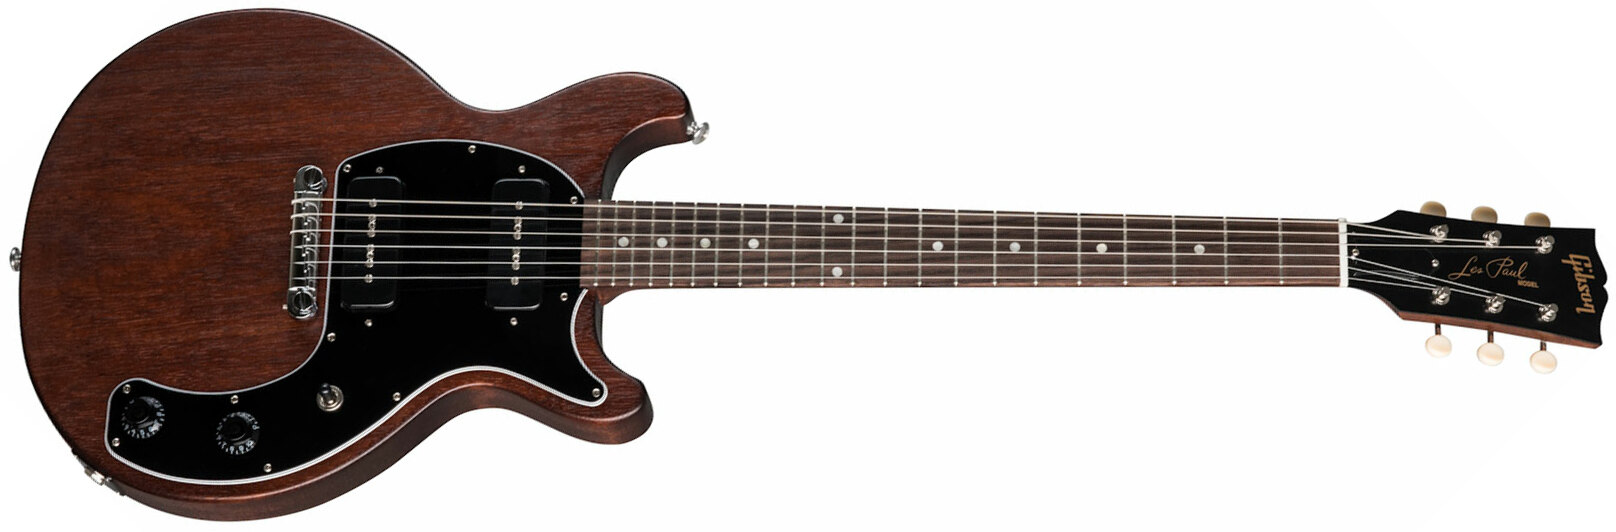 Gibson Les Paul Special Tribute Dc Modern P90 - Worn Brown - Guitarra eléctrica de doble corte - Main picture